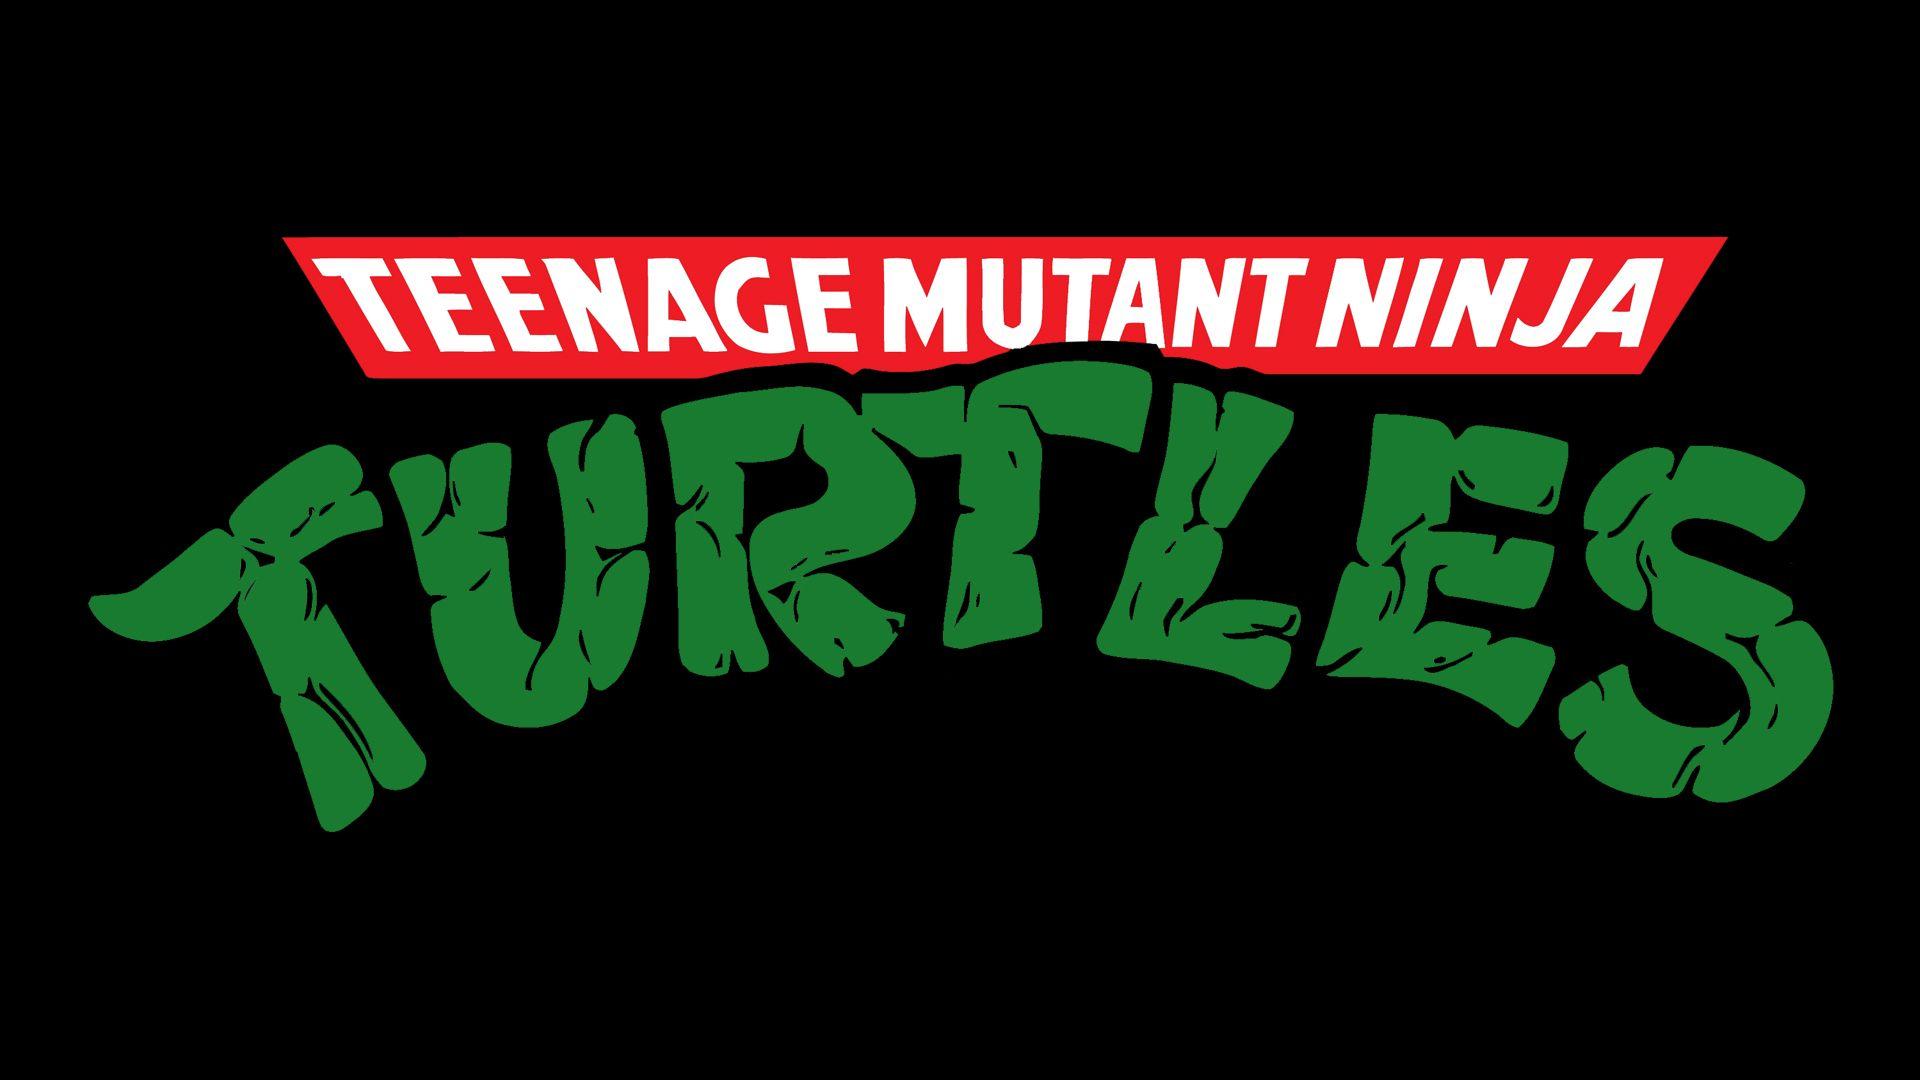 Teenage Mutant Ninja Turtles Logo Wallpaper. Ninja turtles, Turtle wallpaper, Teenage mutant ninja turtles